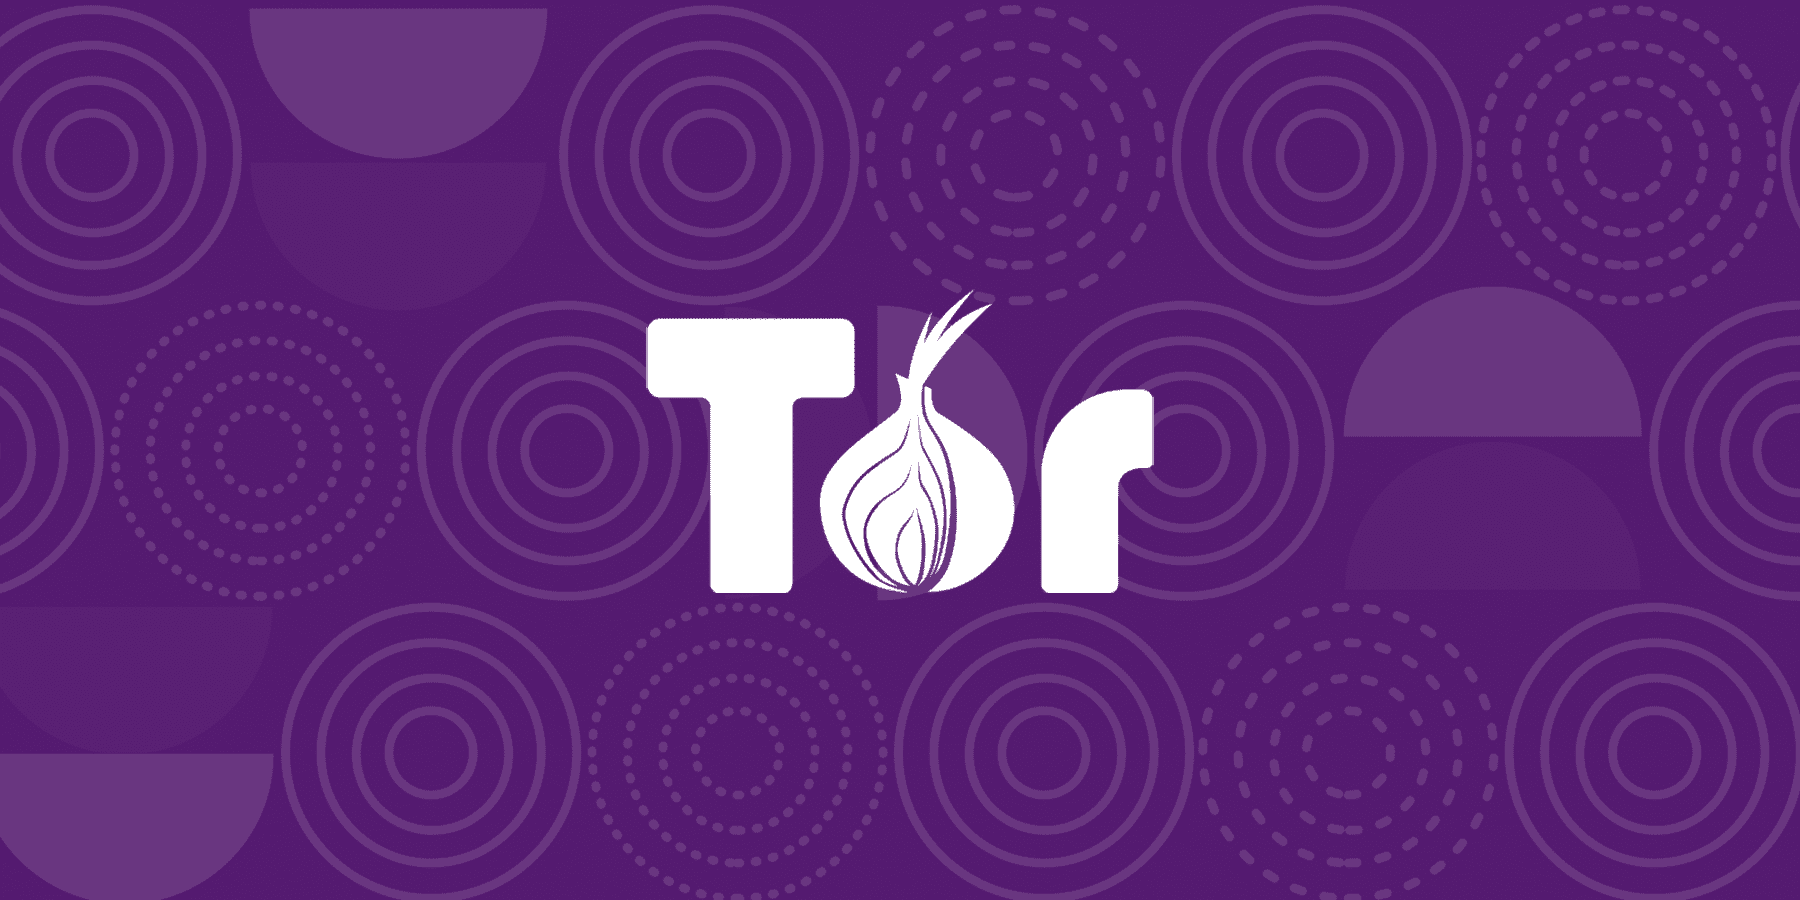 Tor browser ru exe mega tor browser open source mega